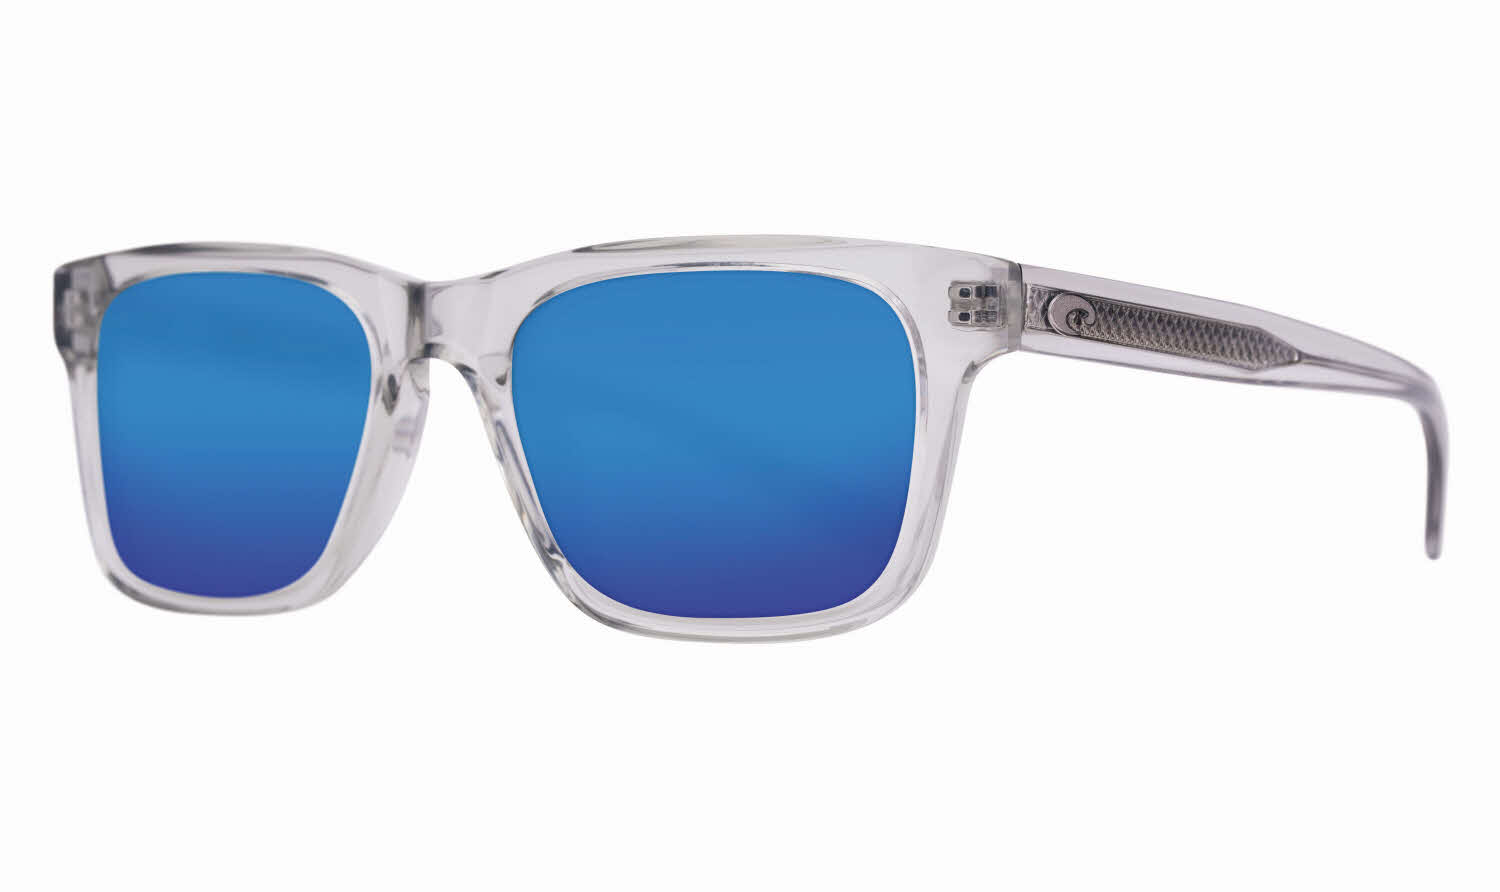 Costa Tybee - Del Mar Collection Men's Sunglasses In Grey